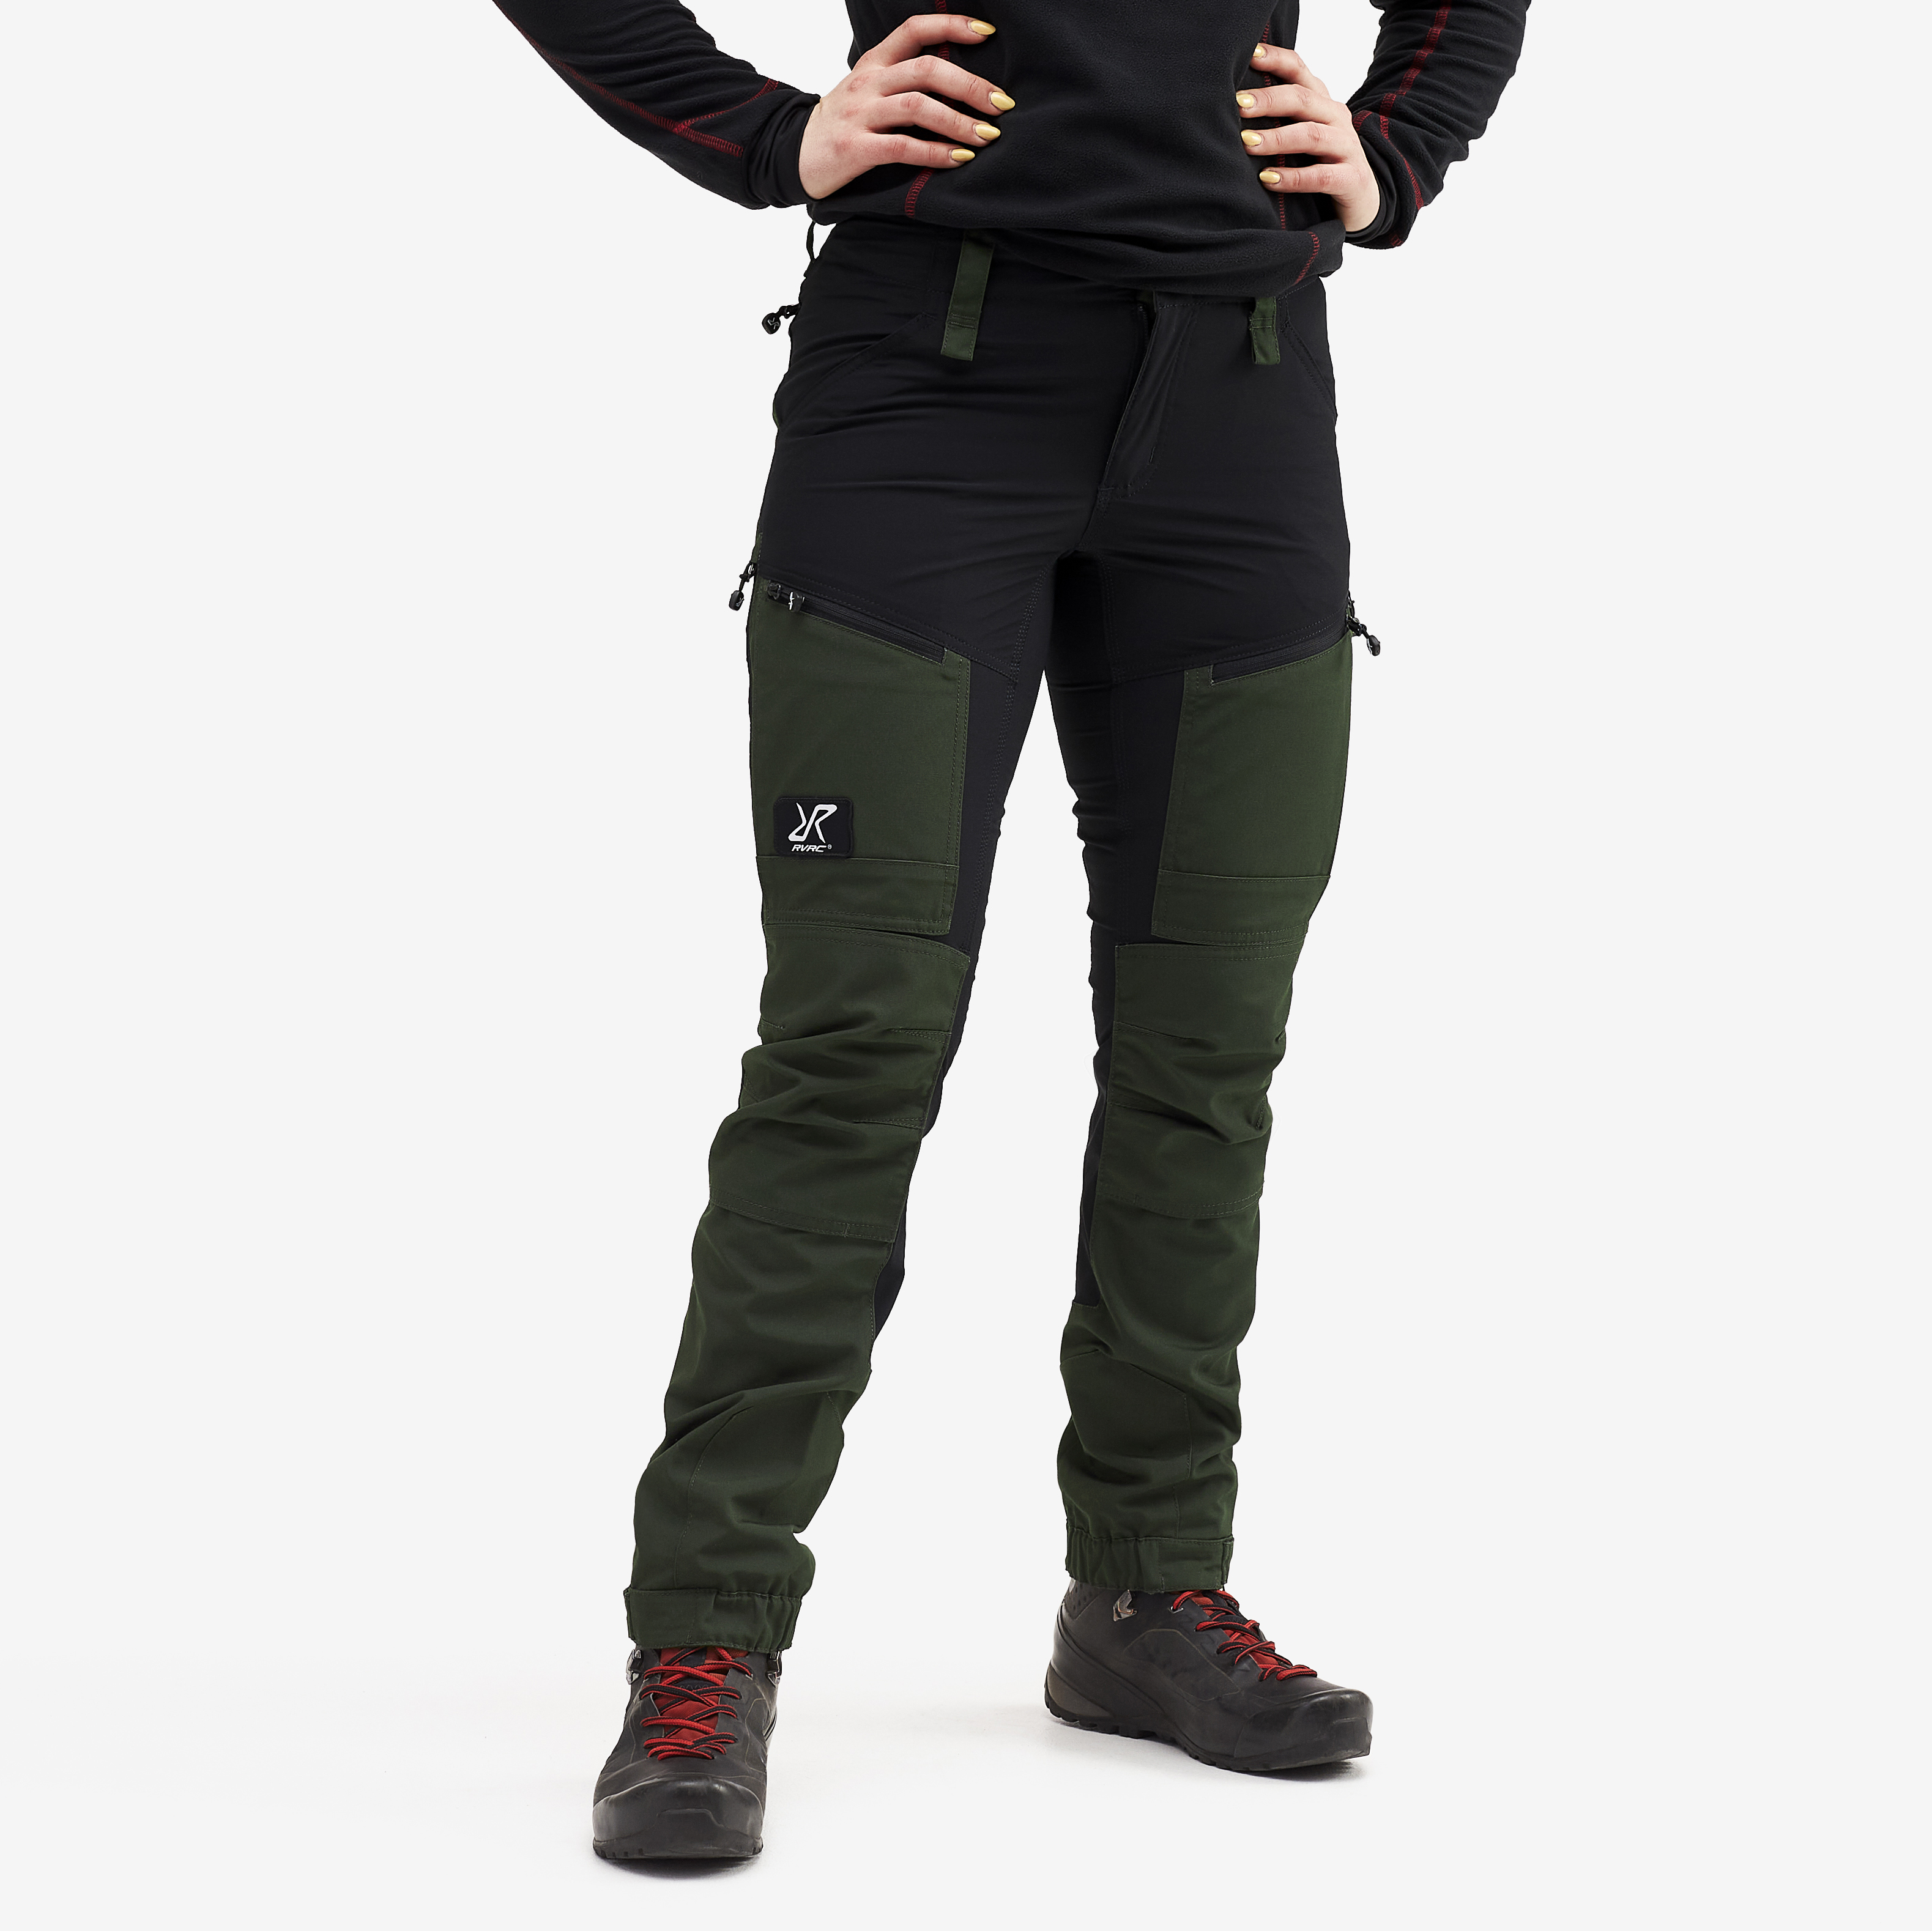 RVRC GP Pro Short turistické kalhoty pro ženy v zelené barvě